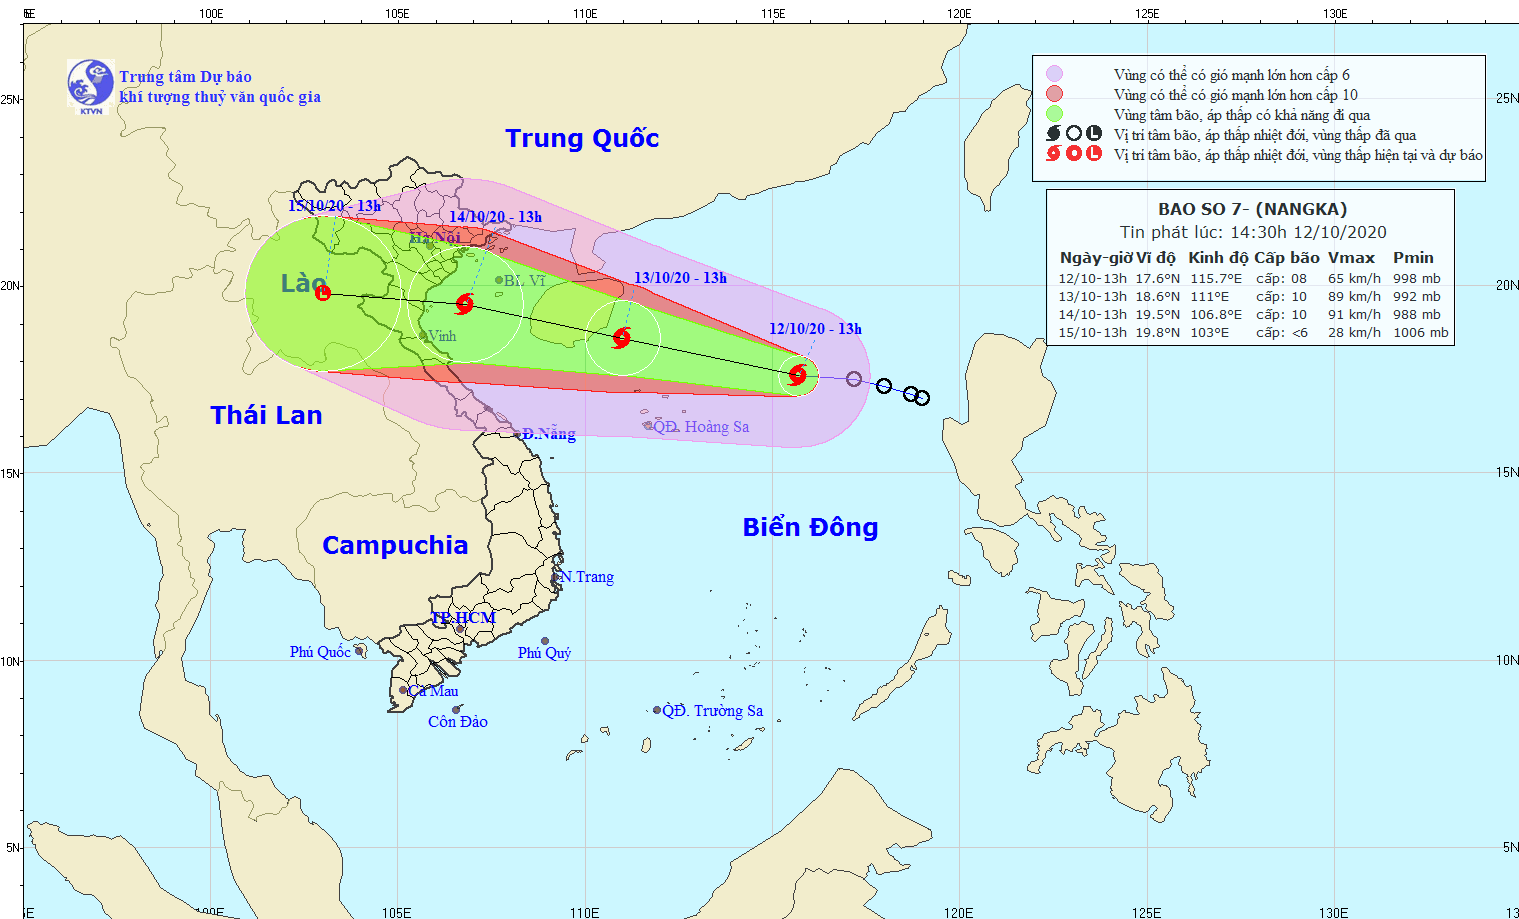 Tin bão số 7 - bão NANGKA: Đổ bộ vào vùng biển các tỉnh Bắc Bộ và Bắc Trung Bộ